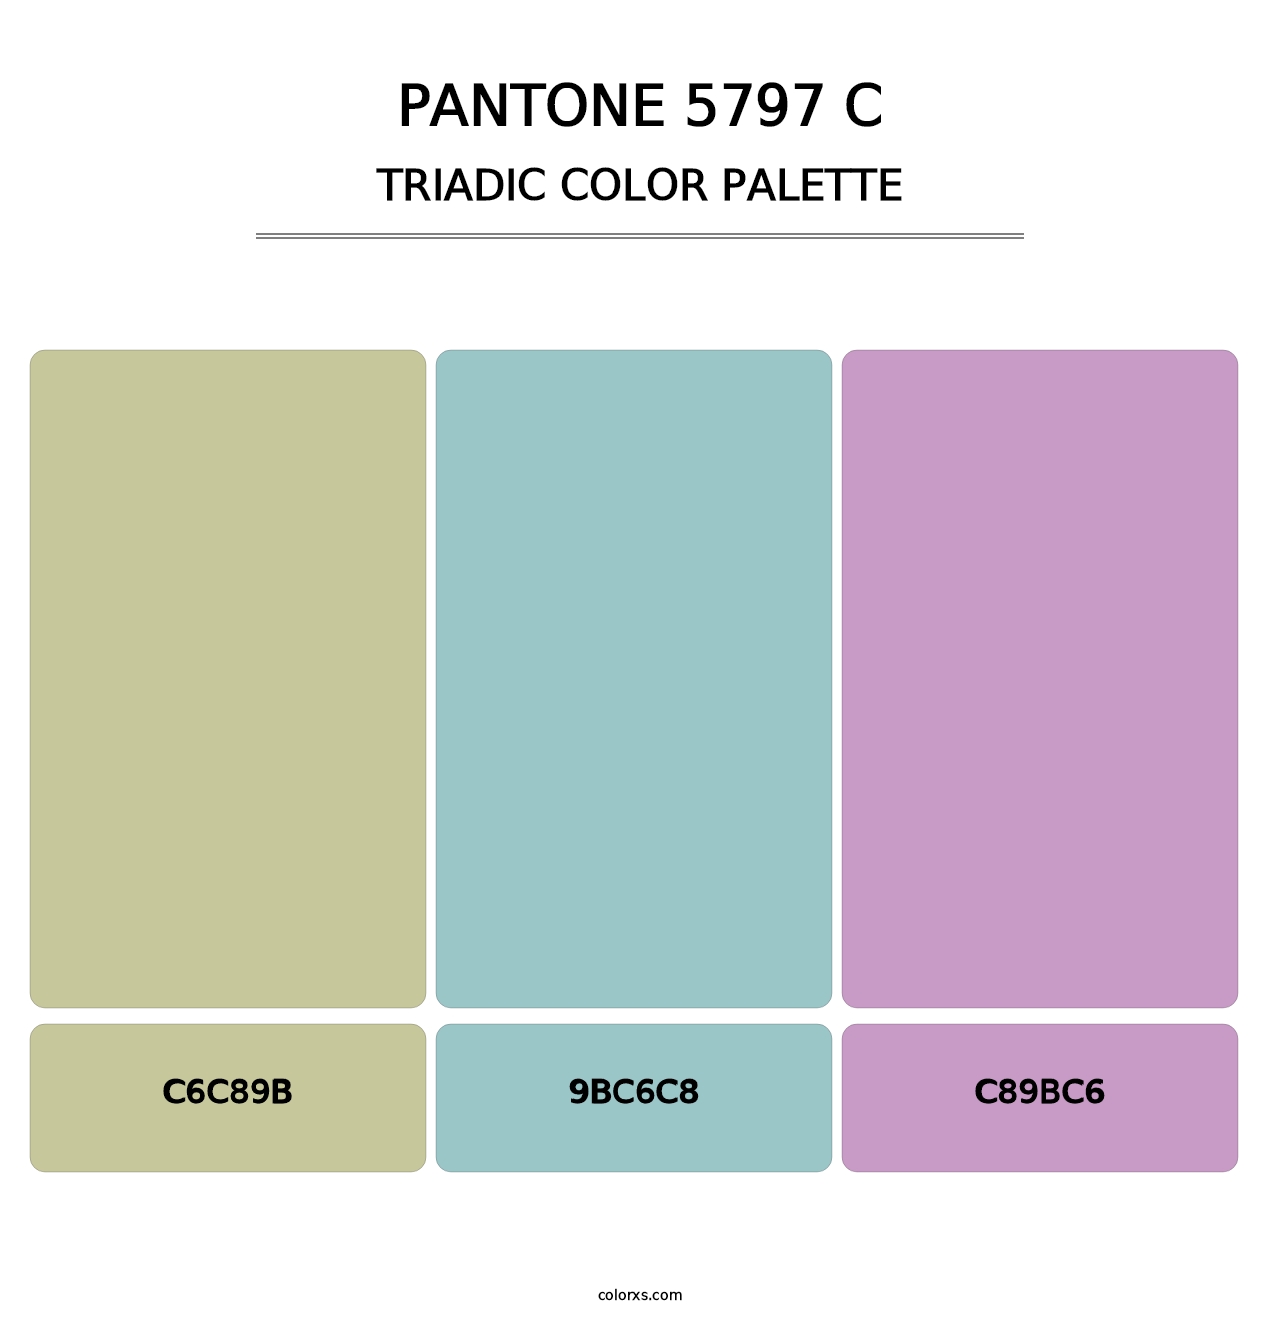 PANTONE 5797 C - Triadic Color Palette